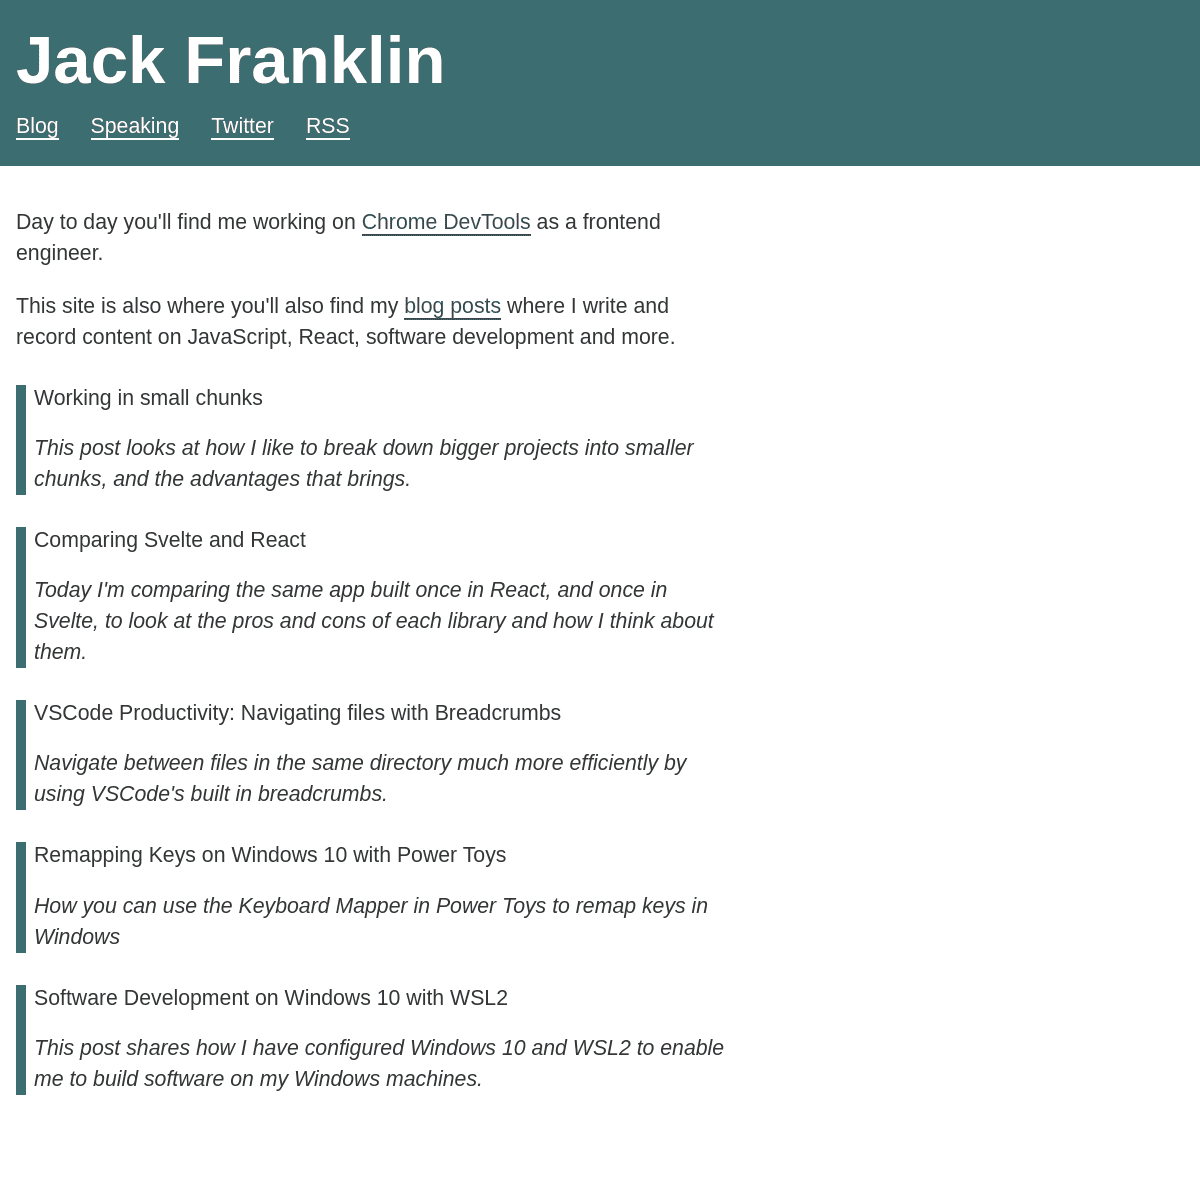 A complete backup of https://jackfranklin.co.uk